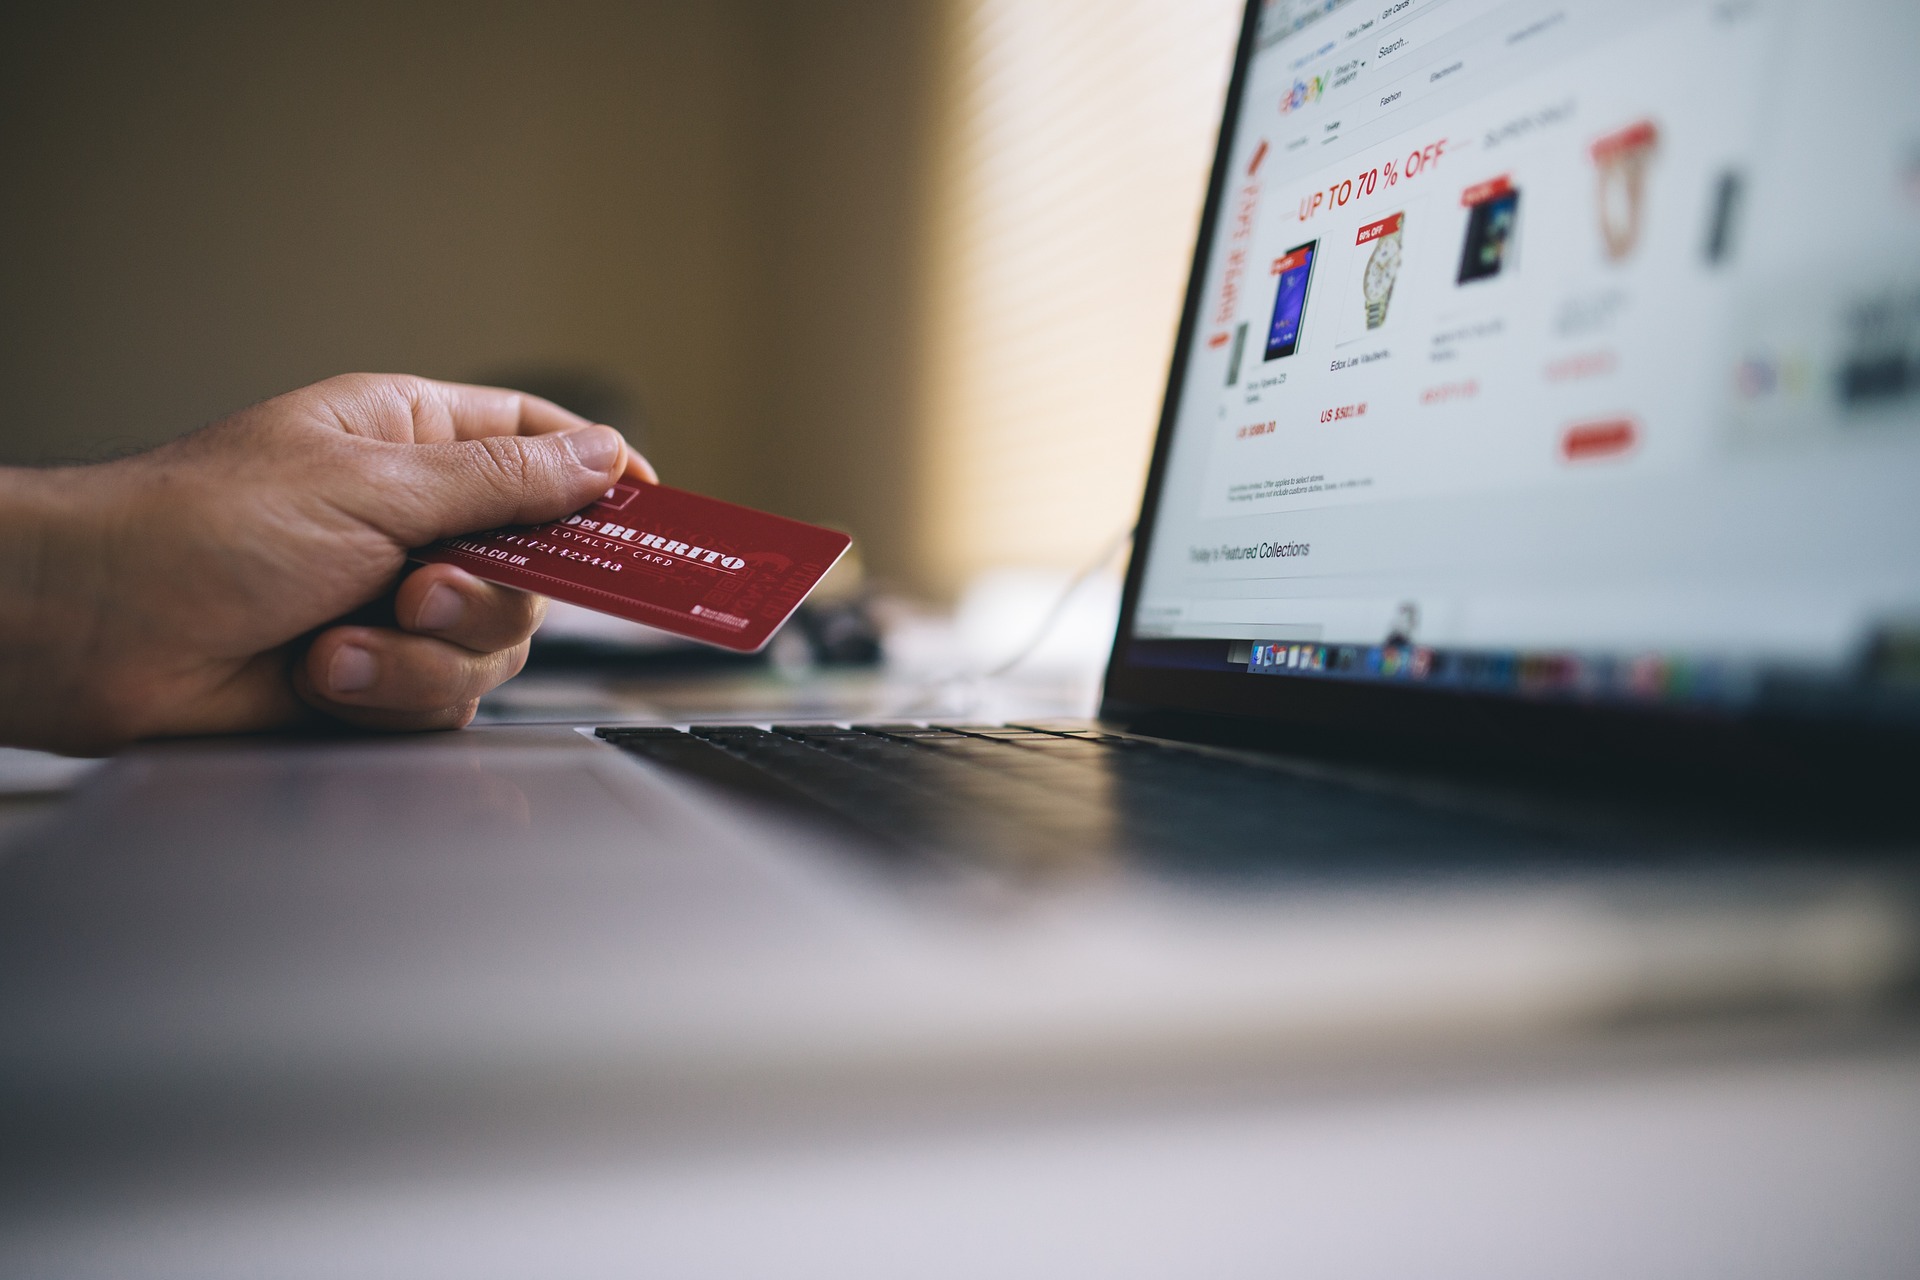 Wirtualna karta kredytowa – wygodna i bezpieczna alternatywa dla tradycyjnych kart kredytowych